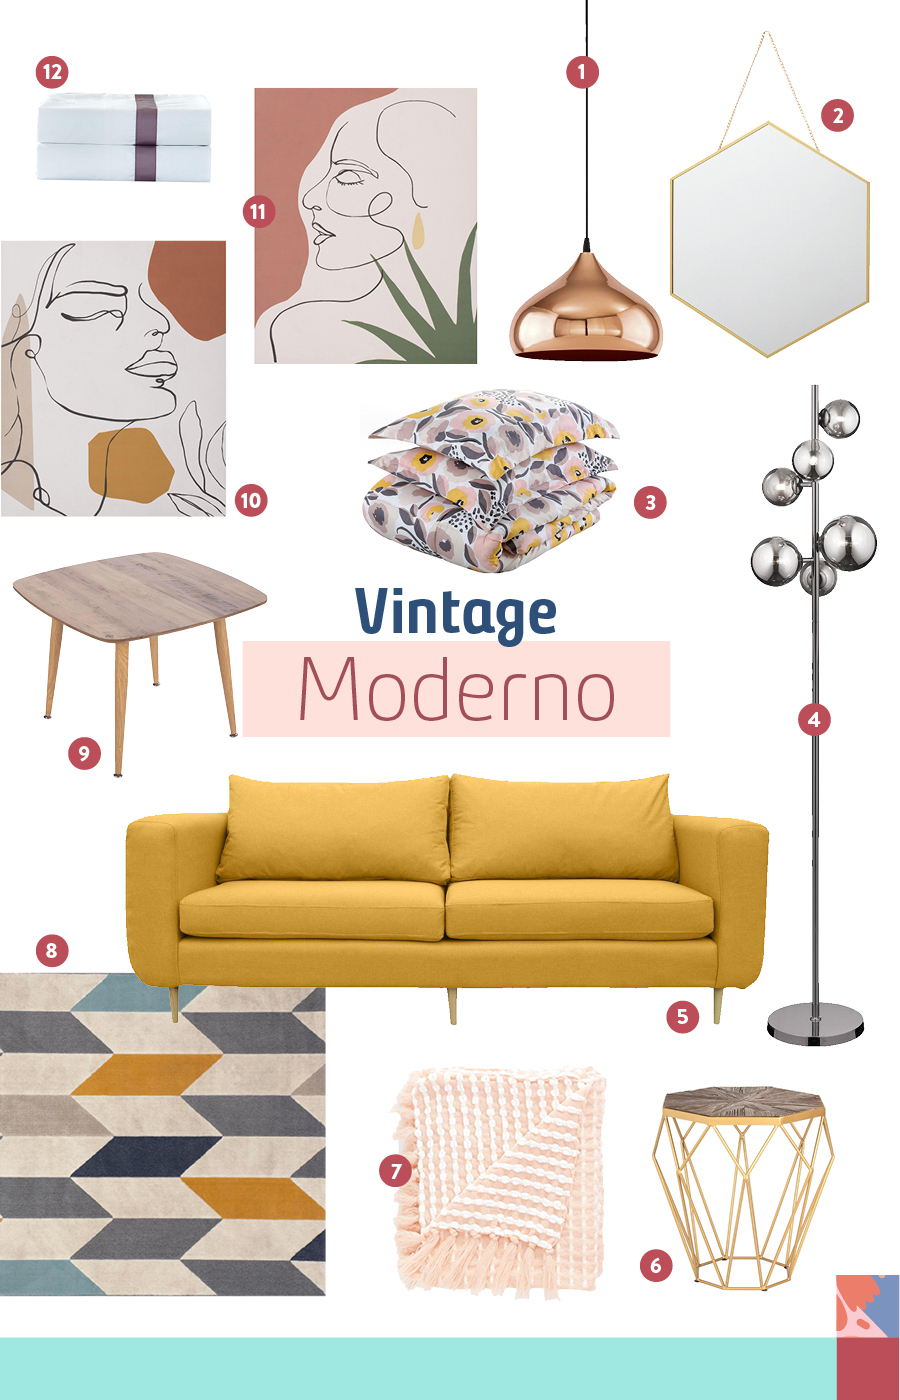 Decoración vintage moderno: créala en 7 pasos - MB Vintage MoDerno REV